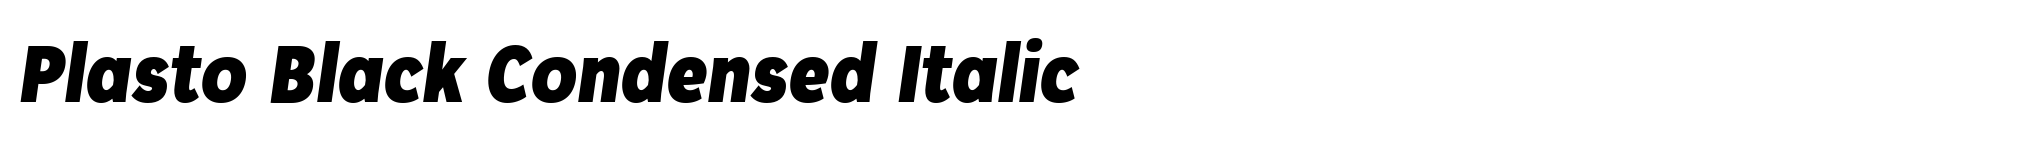 Plasto Black Condensed Italic image